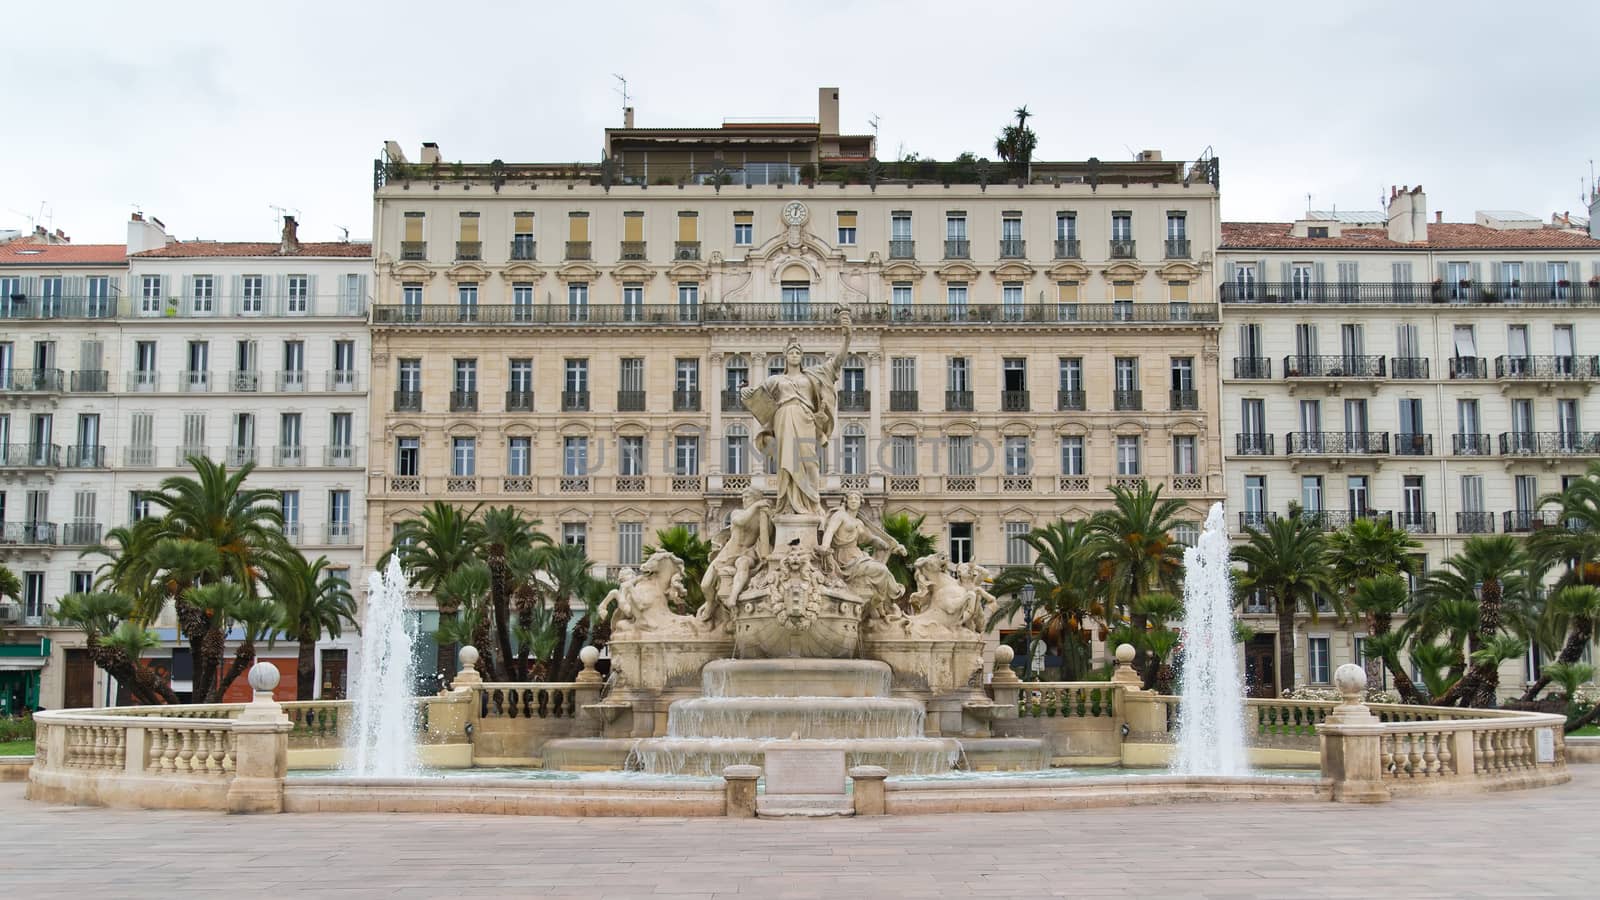 Place de la Libert�� - fountain of Liberty square in Toulon